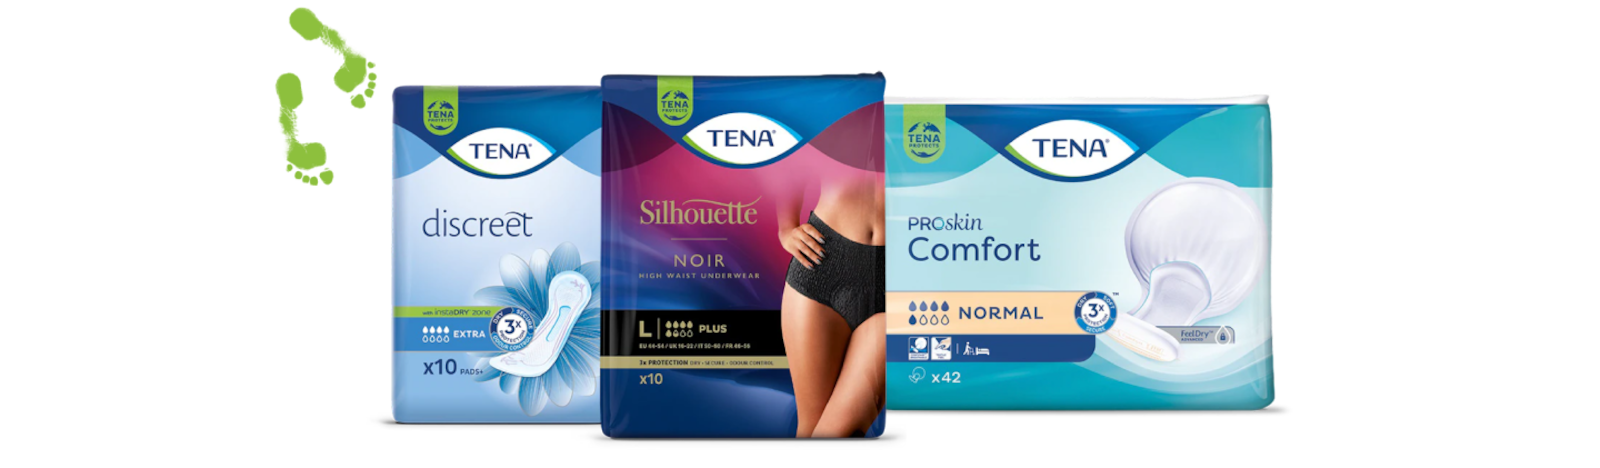 Imagini de prezentare lenjerie intimă TENA Silhouette, absorbante TENA Lady Slim și TENA Proskin Comfort